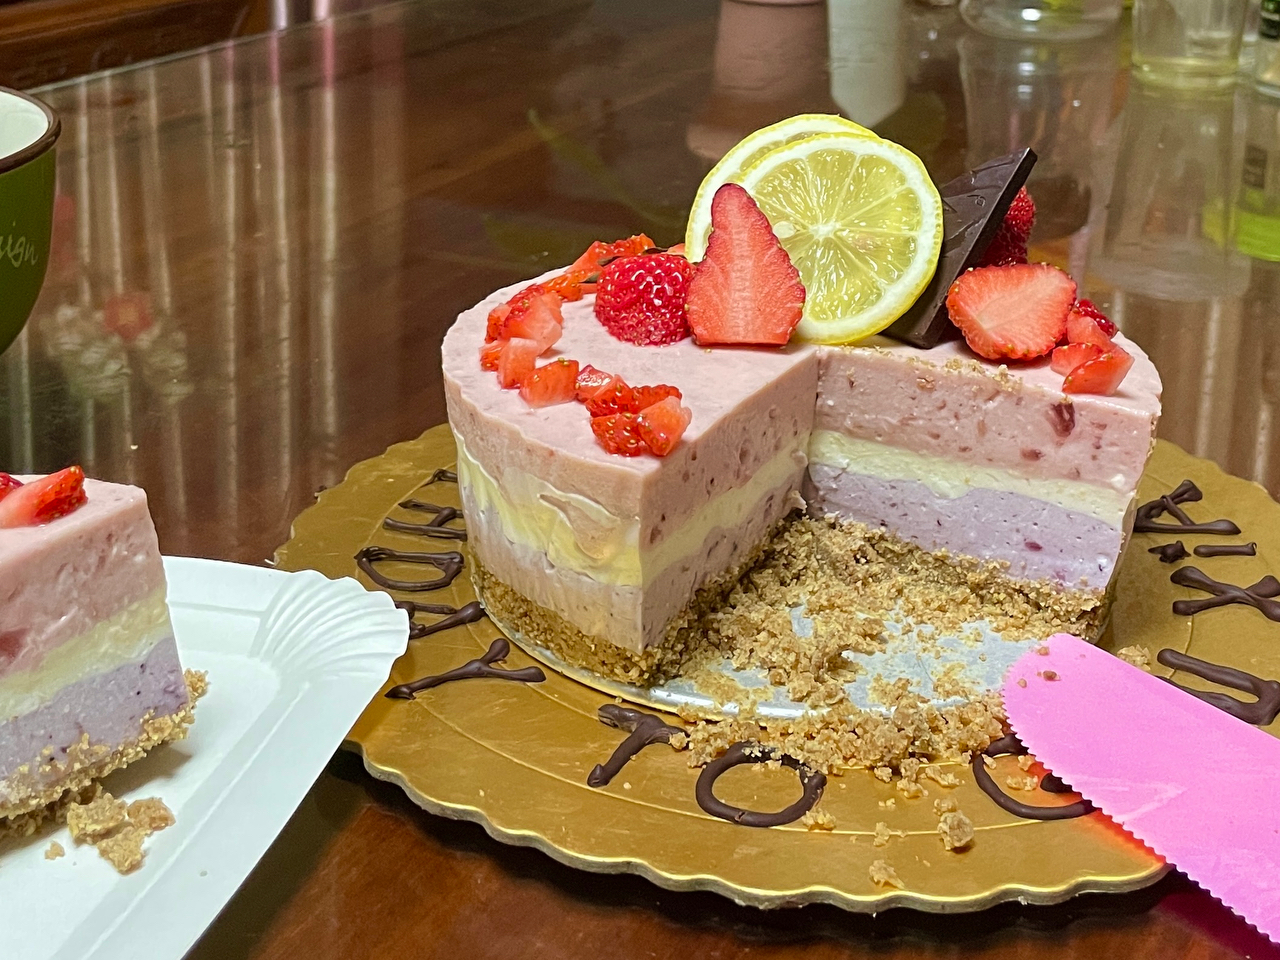 ⛱夏日免烤甜品🍓🫐高颜值莓果芝士蛋糕